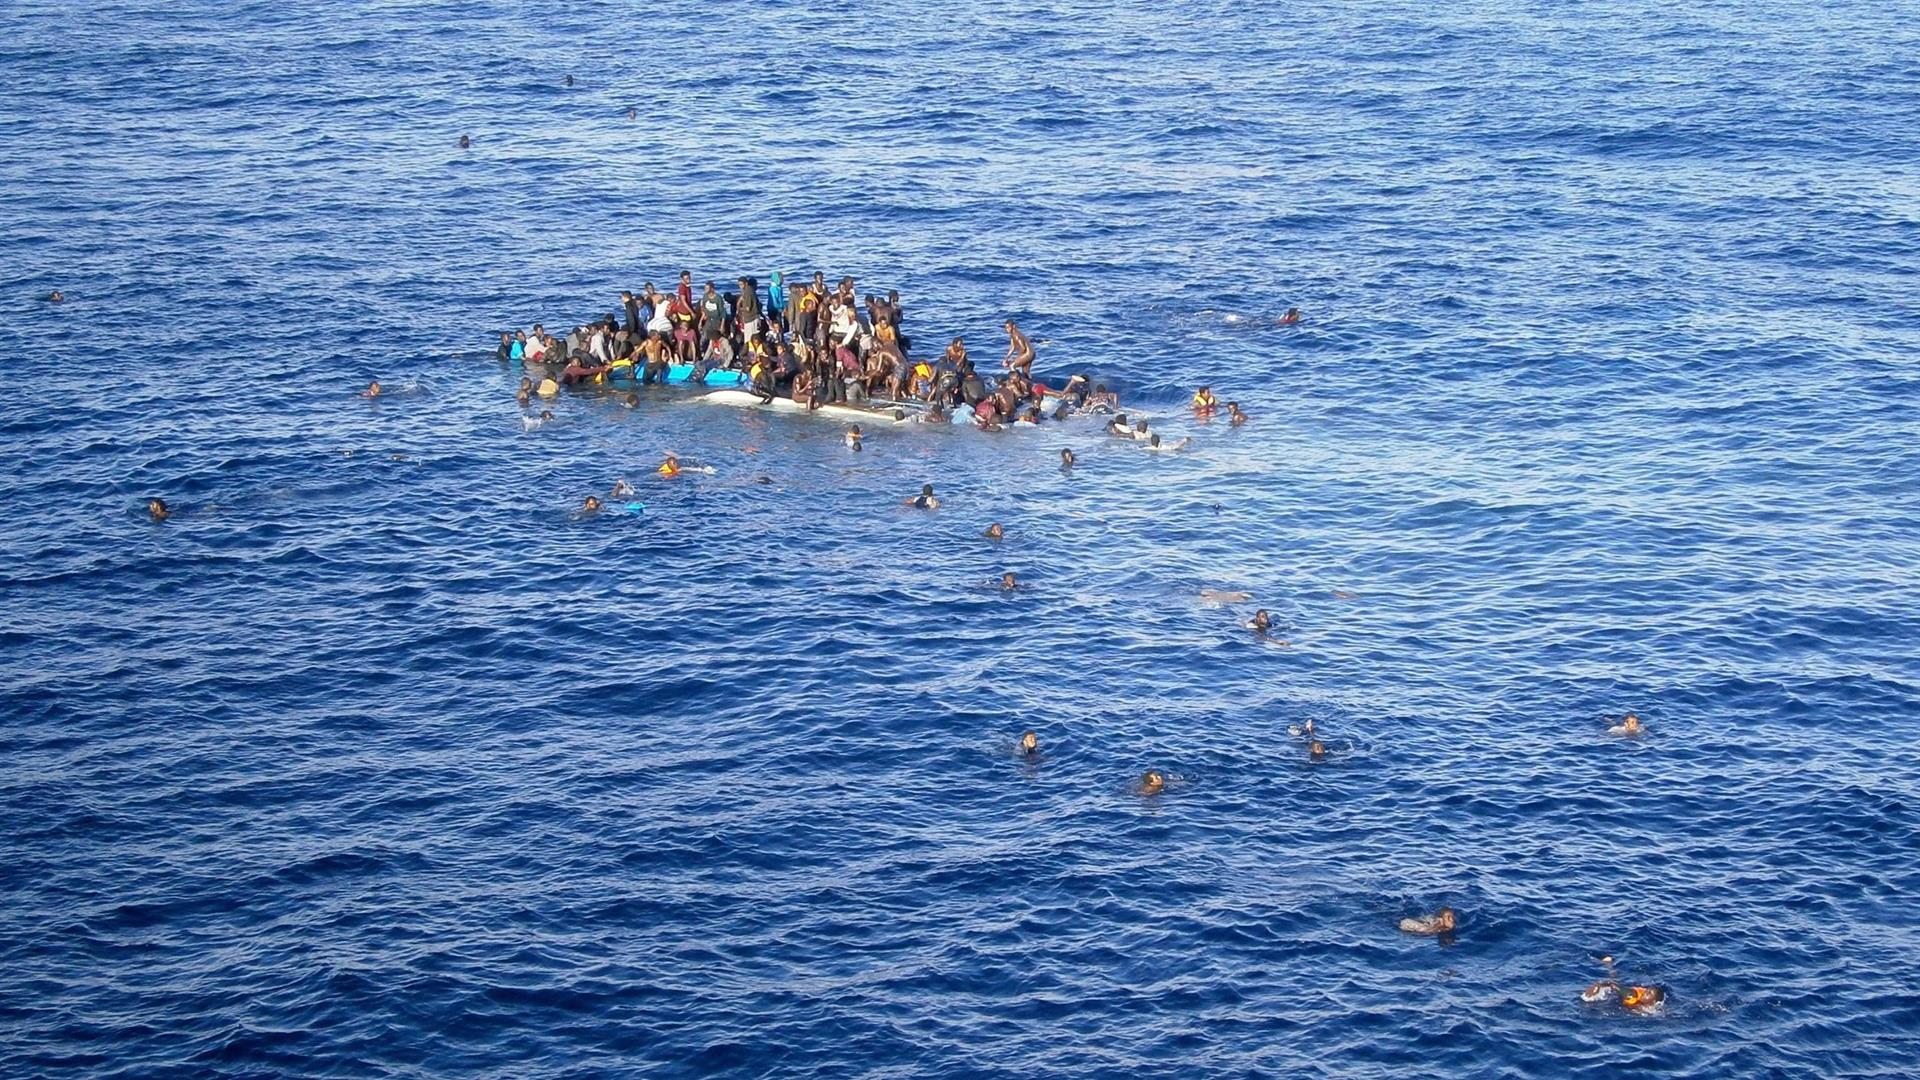 Facilita i respingimenti illegali, ong contro il governo. Per la Sea Watch 85 migranti sono stati riportati a Tripoli dalla guardia costiera libica su una nave donata da Roma